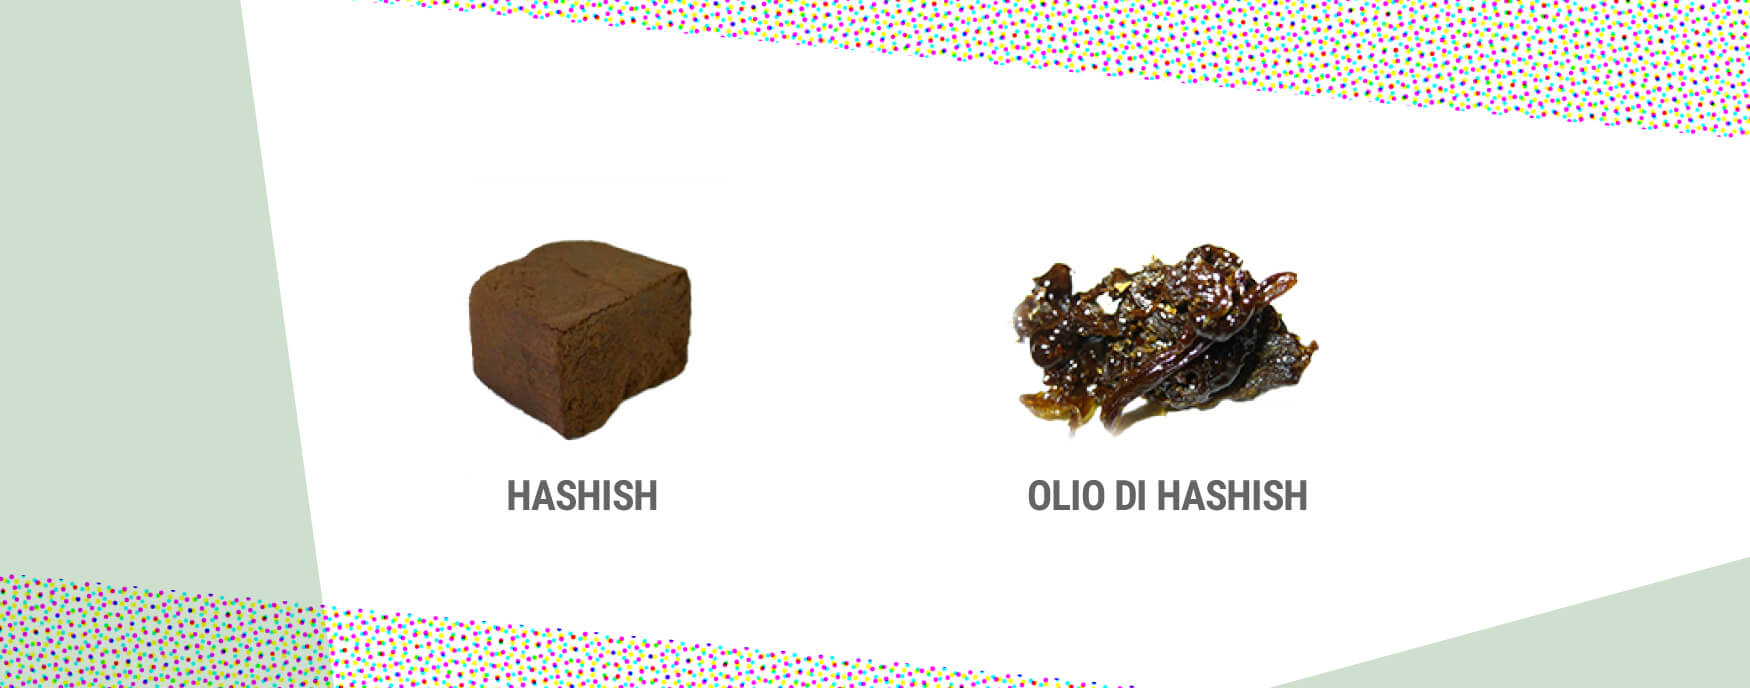 Hashish e olio di hashish